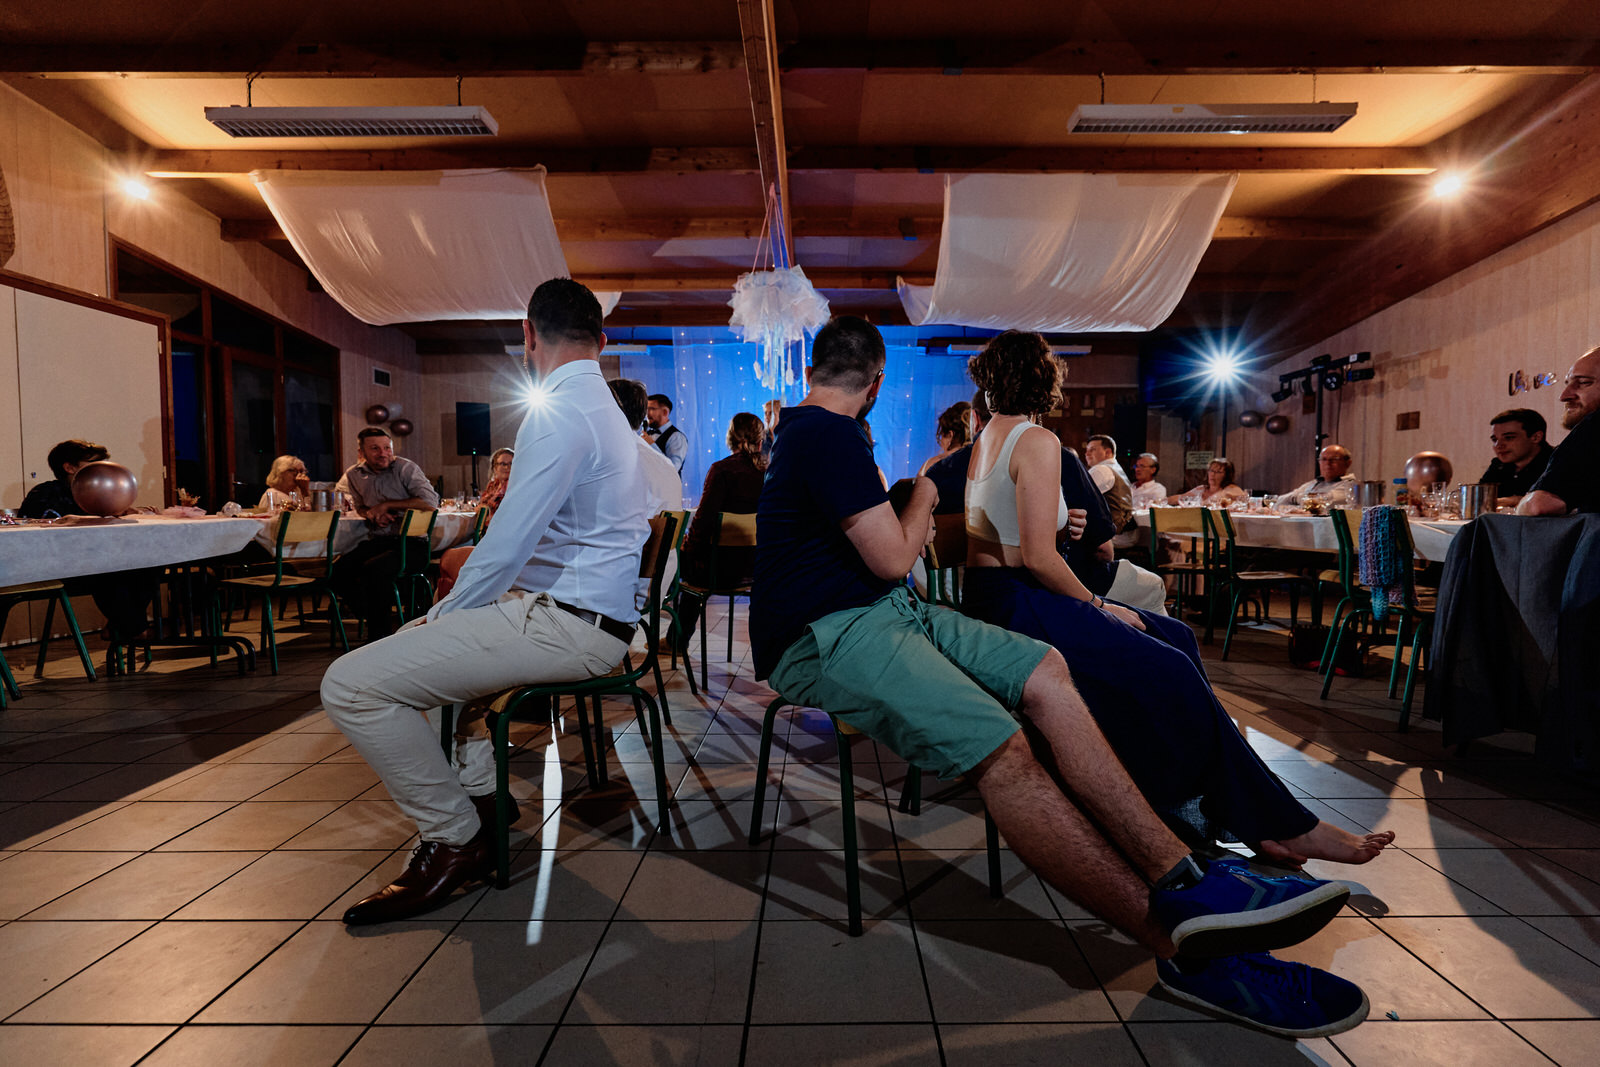 invités de mariage assis sur les chaises pendant un jeu de chaises musicales